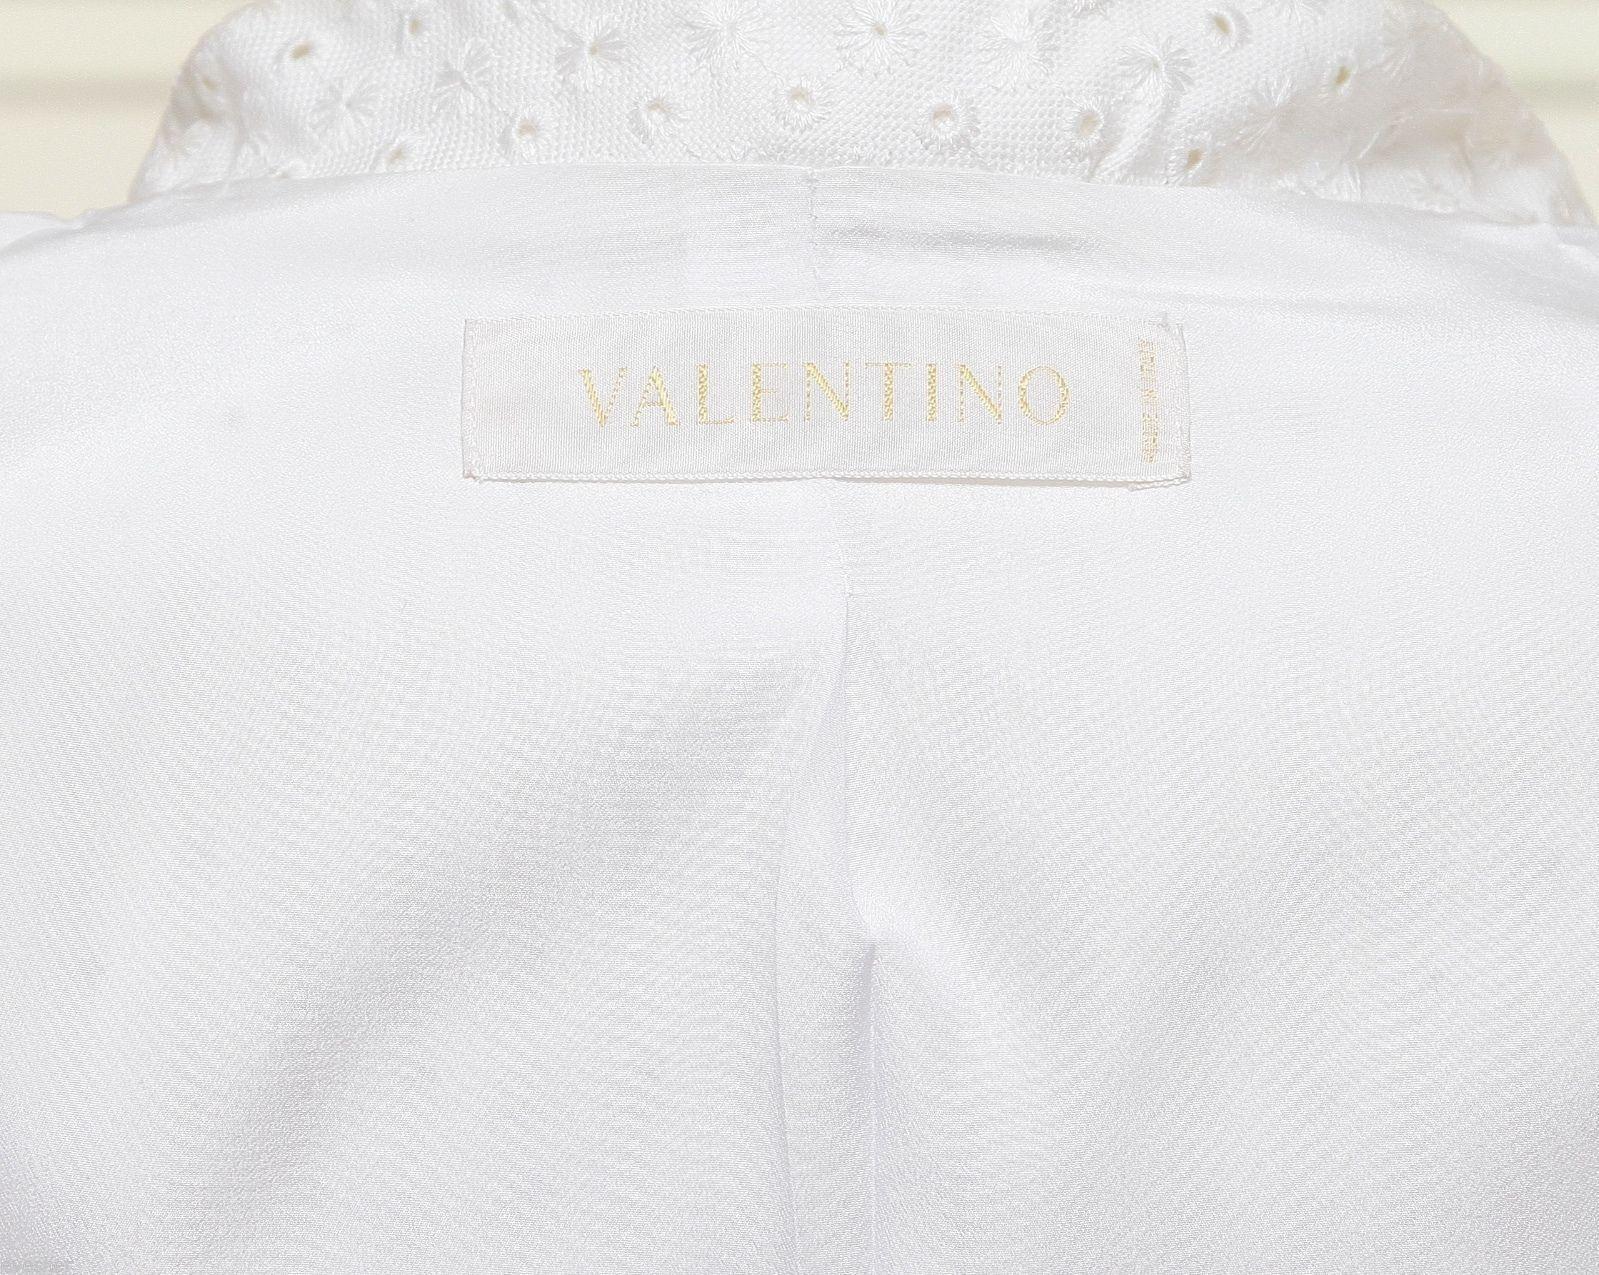 Valentino White Blazer Jacket Eyelet Cotton Viscose Long Sleeve Lined Sz 4 For Sale 3